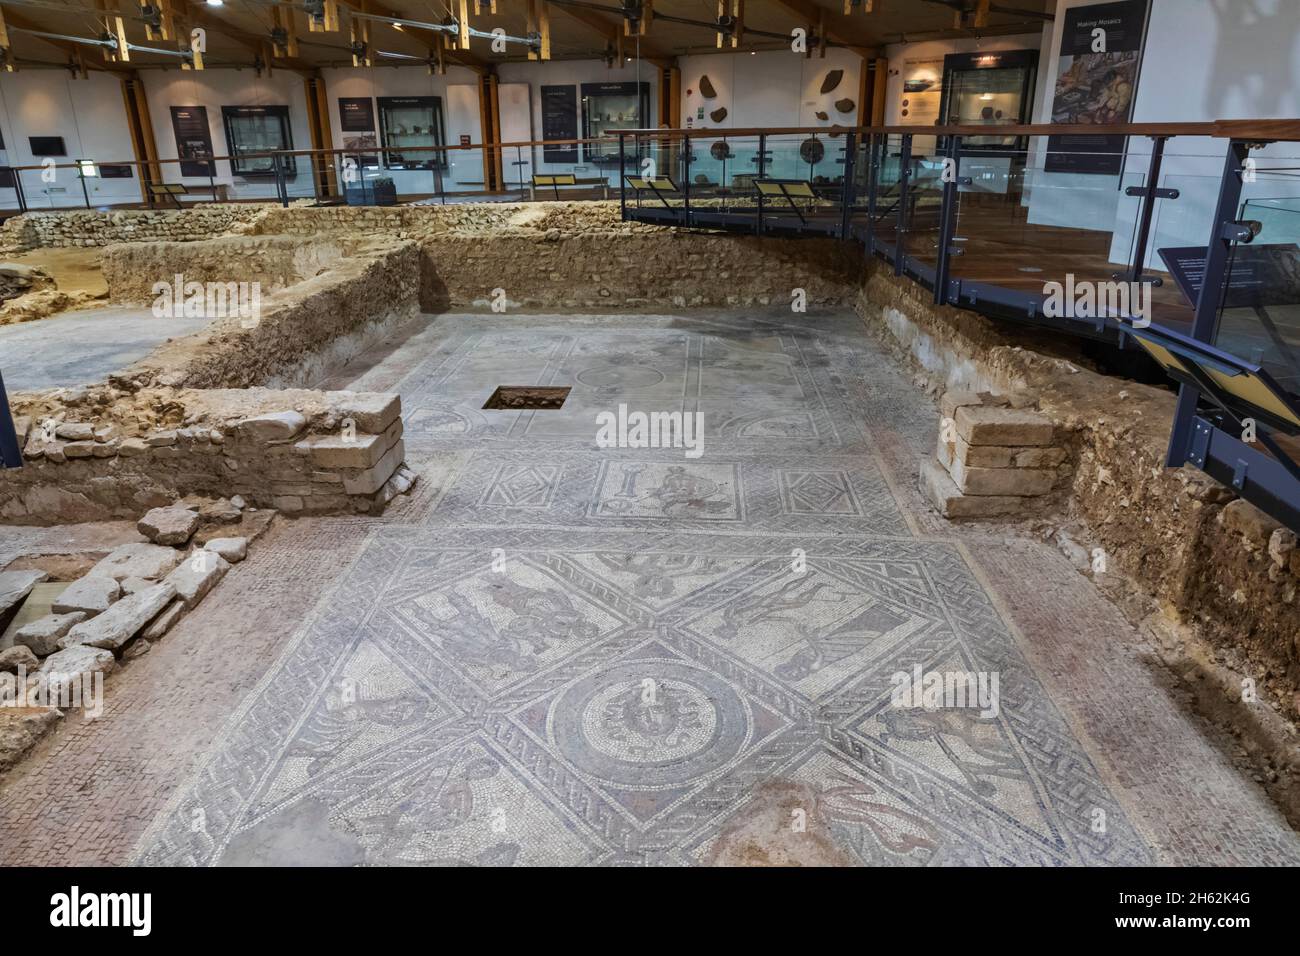 inghilterra, isola di wight, villa romana, vista interna del pavimento a mosaico Foto Stock